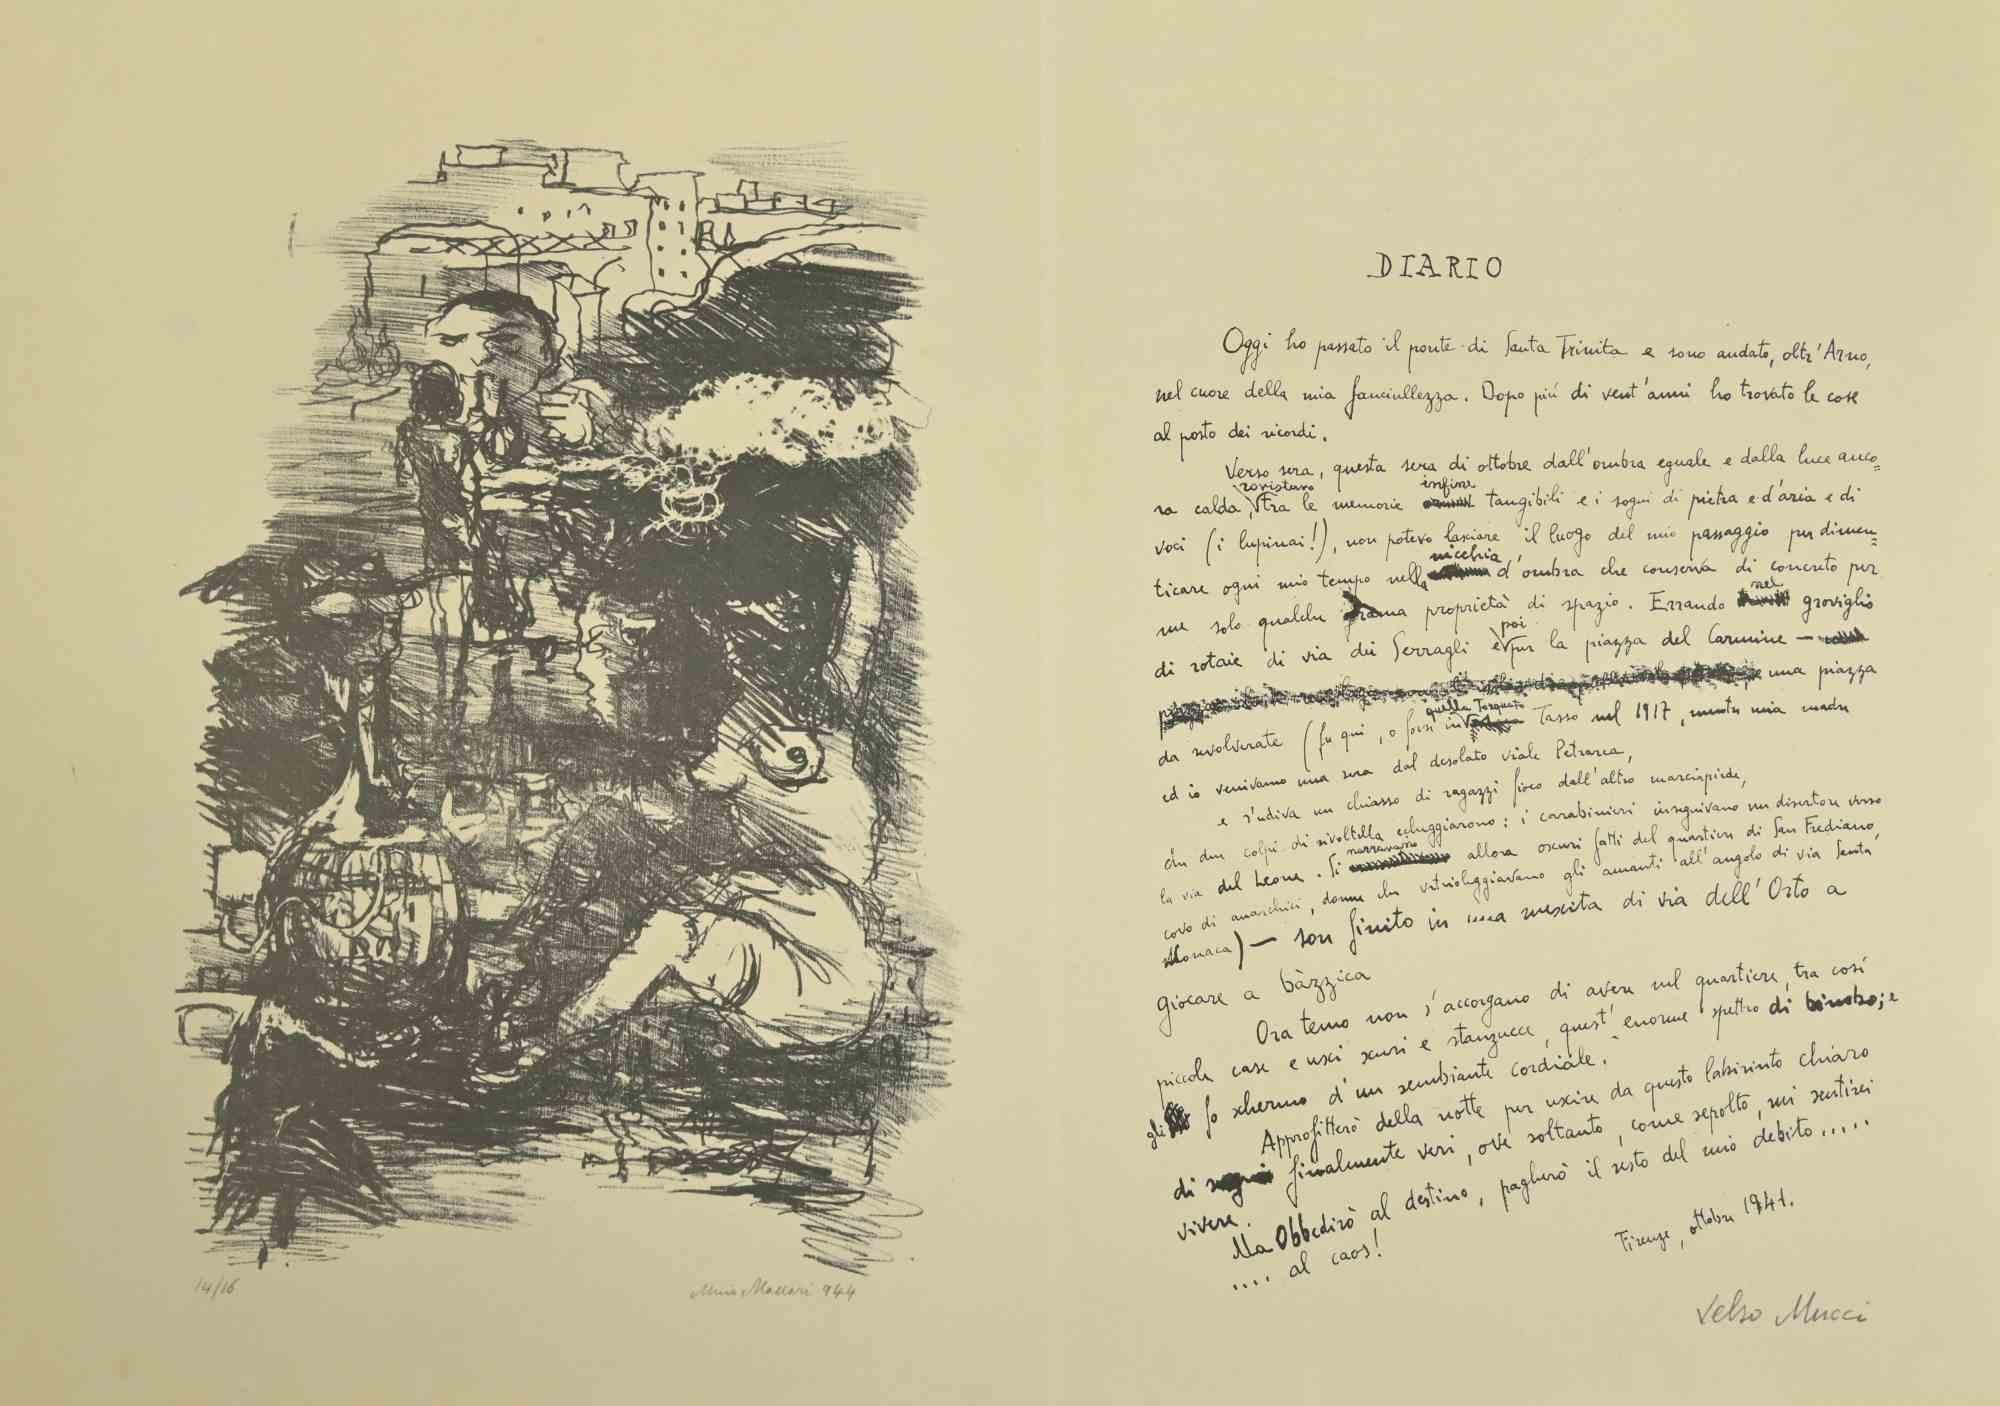 Das Tagebuch ist ein modernes Kunstwerk von Mino Maccari und Velso Mucci aus den Jahren 1944-1947.

Schwarz-Weiß-Lithographie von Maccari realisiert und ein Test von Valso Mucci in italienischer Sprache auf der zweiten Seite geschrieben.

Die